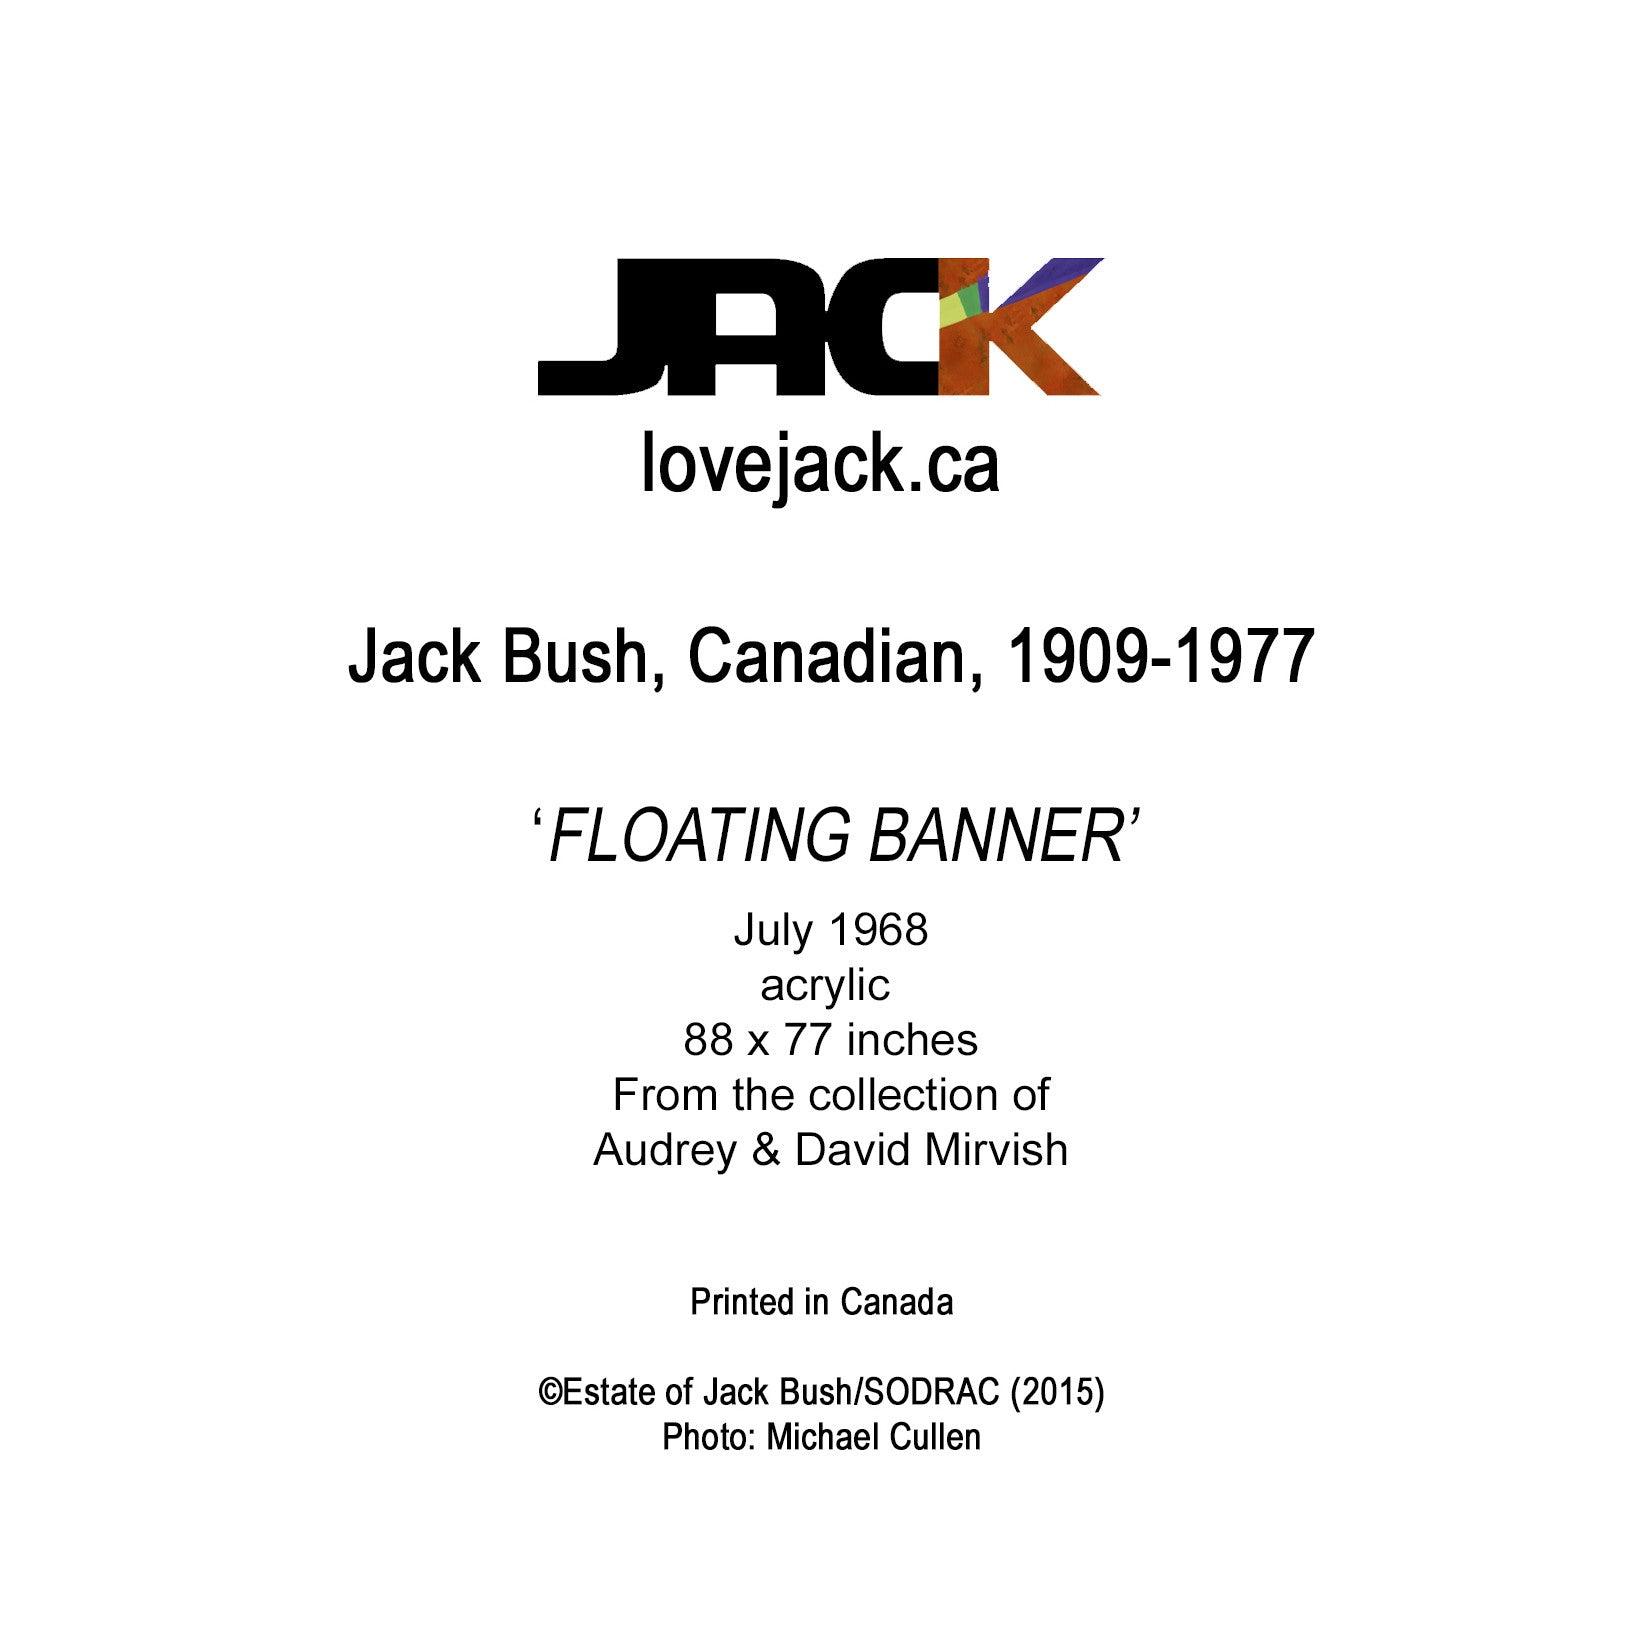 Floating Banner - JACK